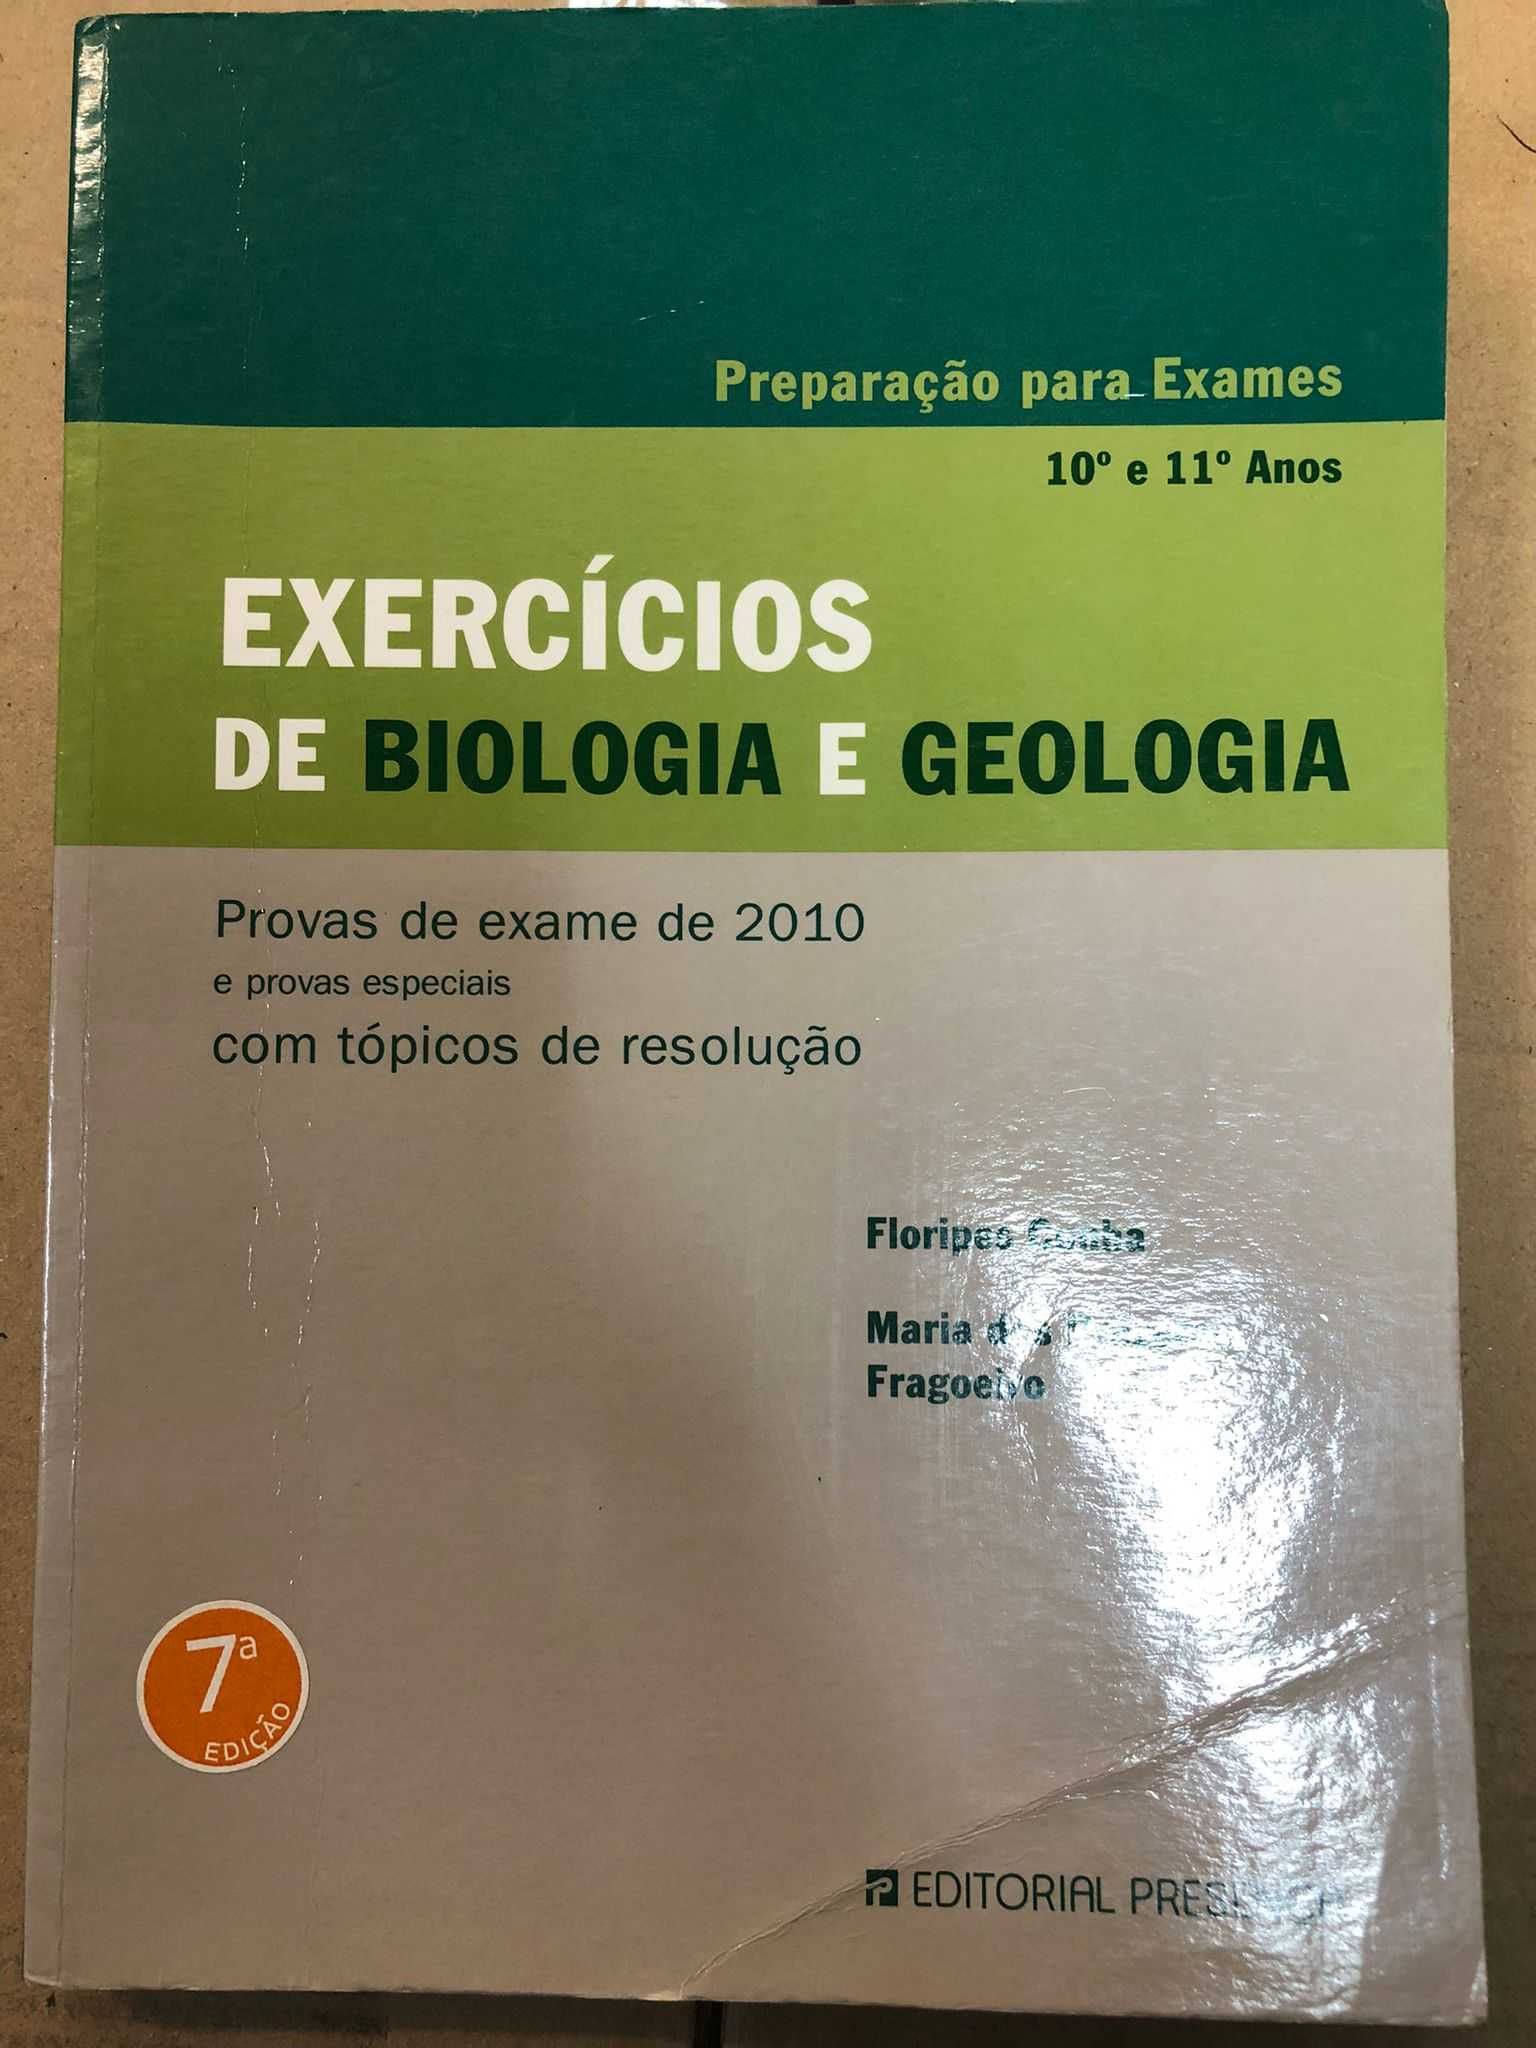 Exercícios de Biologia e Geologia - Preparação para Exames